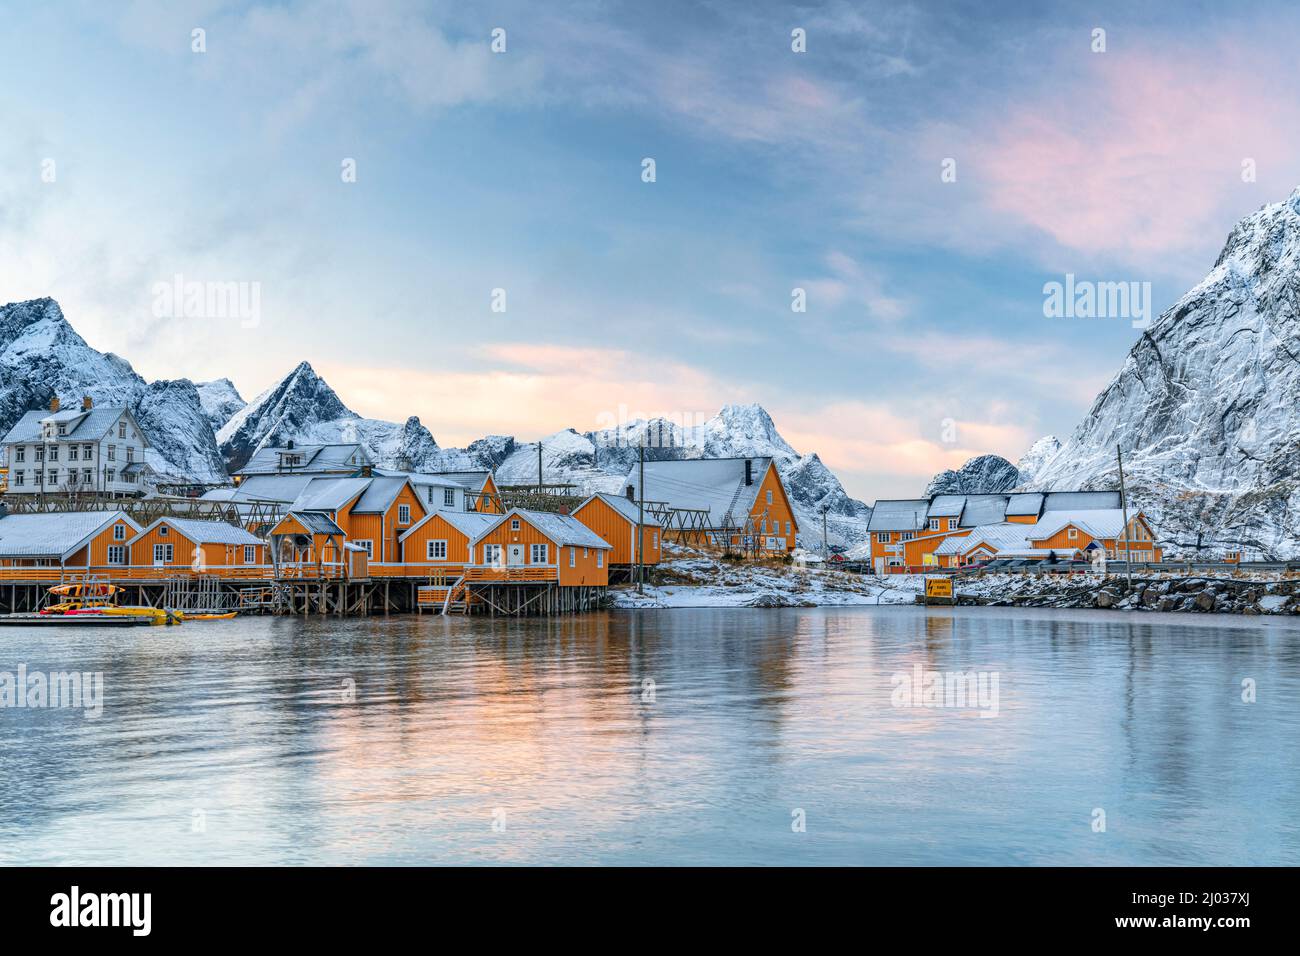 Le cabine di legno dei pescatori ricoperte di neve al tramonto nel piccolo villaggio di Sakrisoy, Reine, Nordland, Isole Lofoten, Norvegia, Scandinavia, Europa Foto Stock